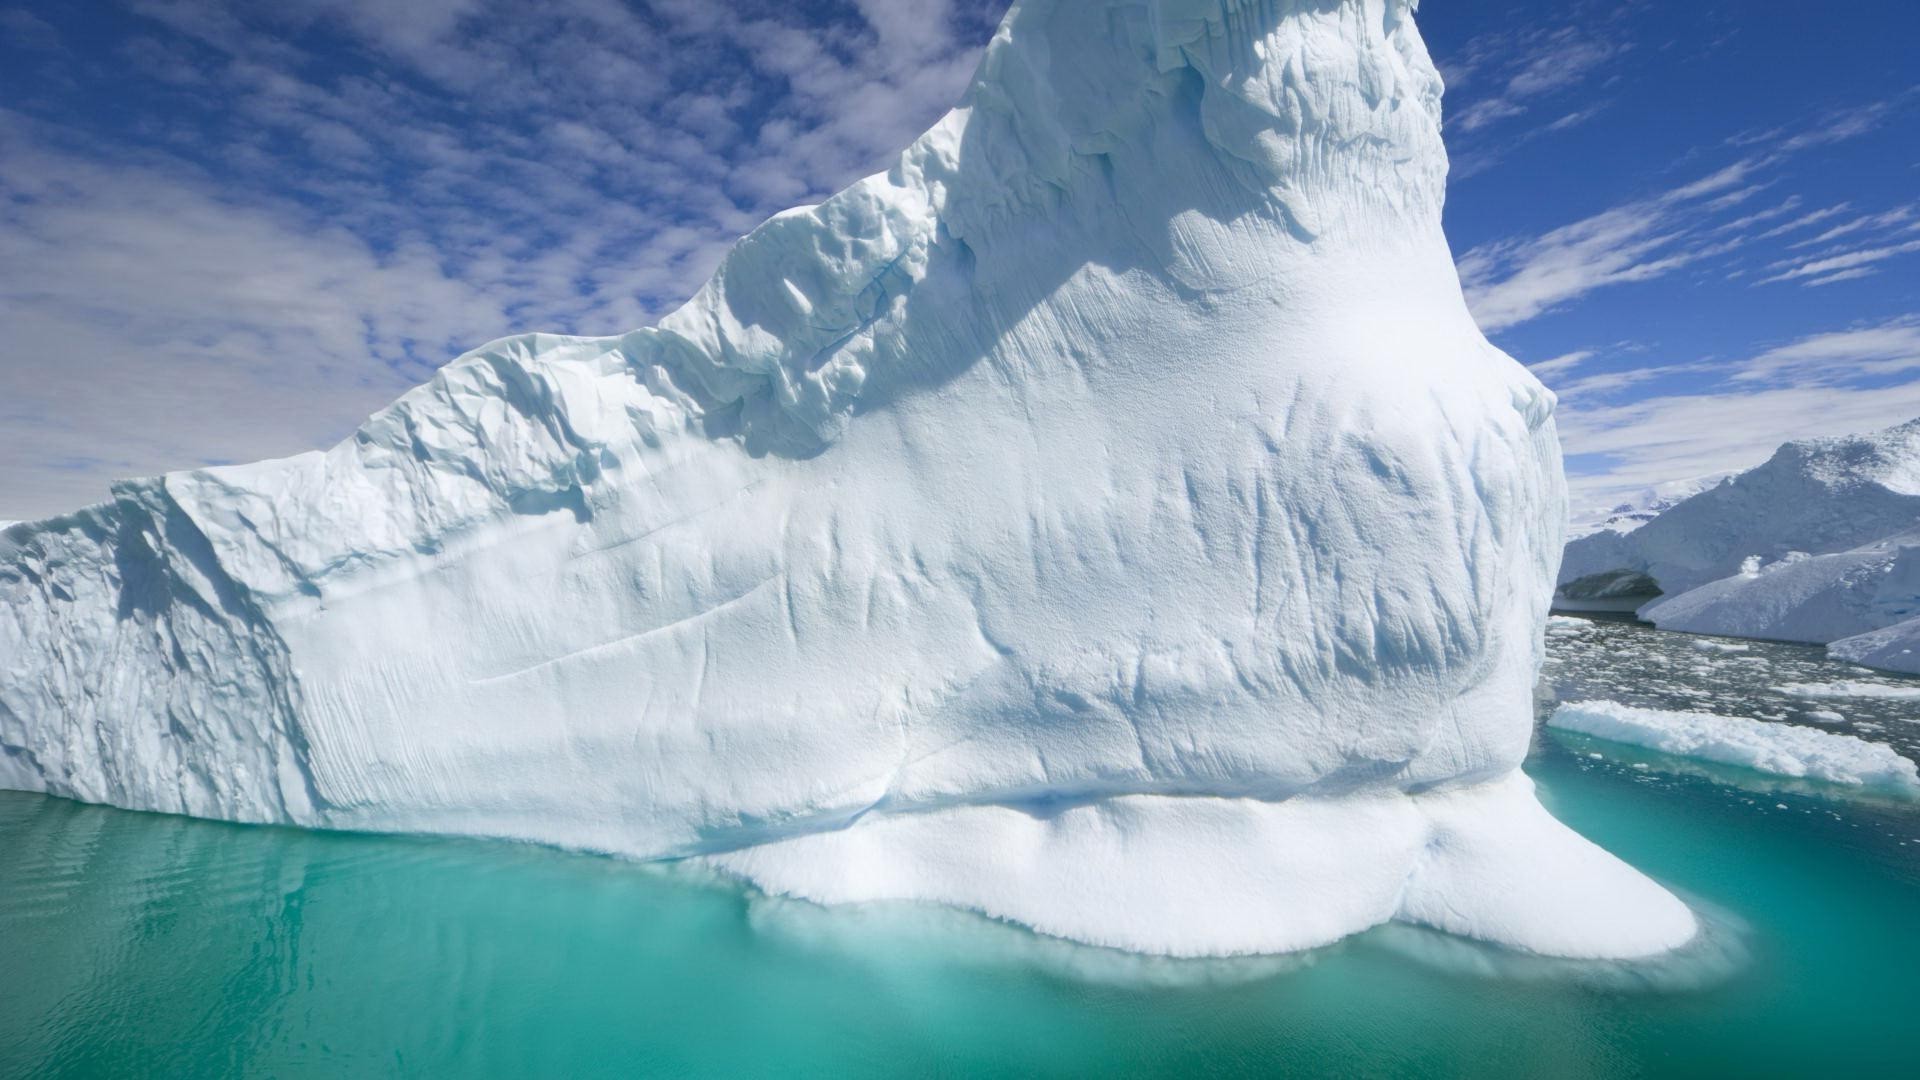 лед снег ледник айсберг воды плавления холодная морозный горы природа зима путешествия высокая пейзаж небо приключения дикий лезут плавание